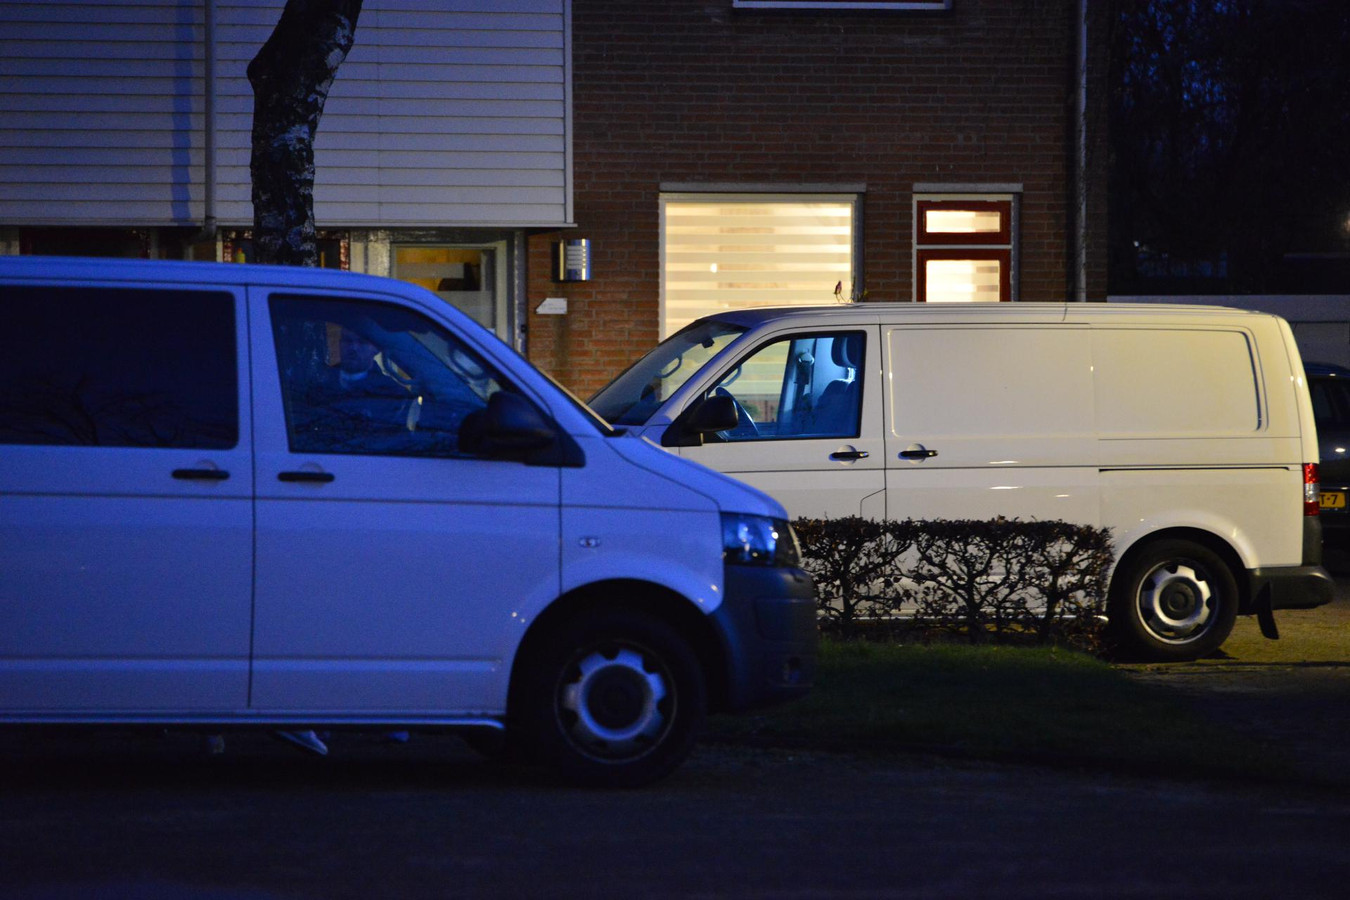 Vier doden aangetroffen in woning in Etten-Leur, de politie doet uitgebreid onderzoek